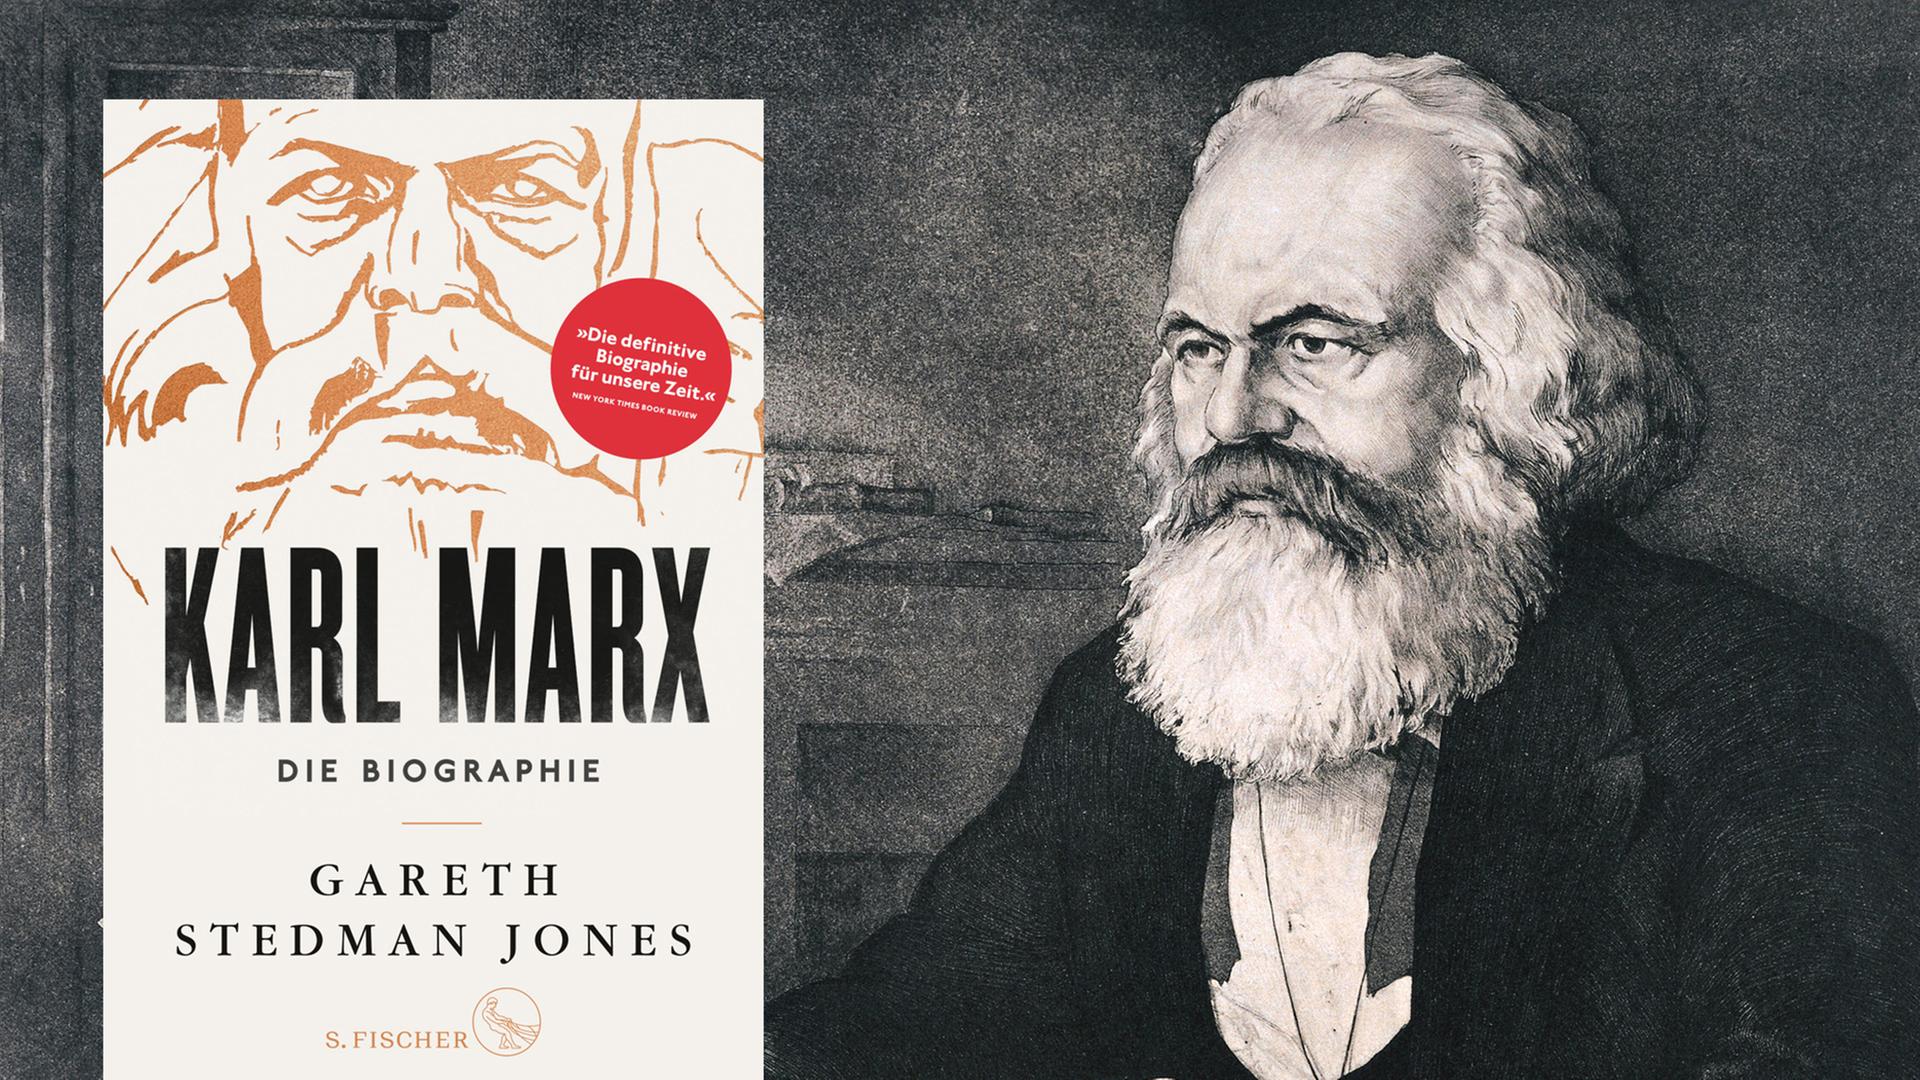 Buchcover: "Karl Marx. Die Biographie" von Gareth Stedman Jones